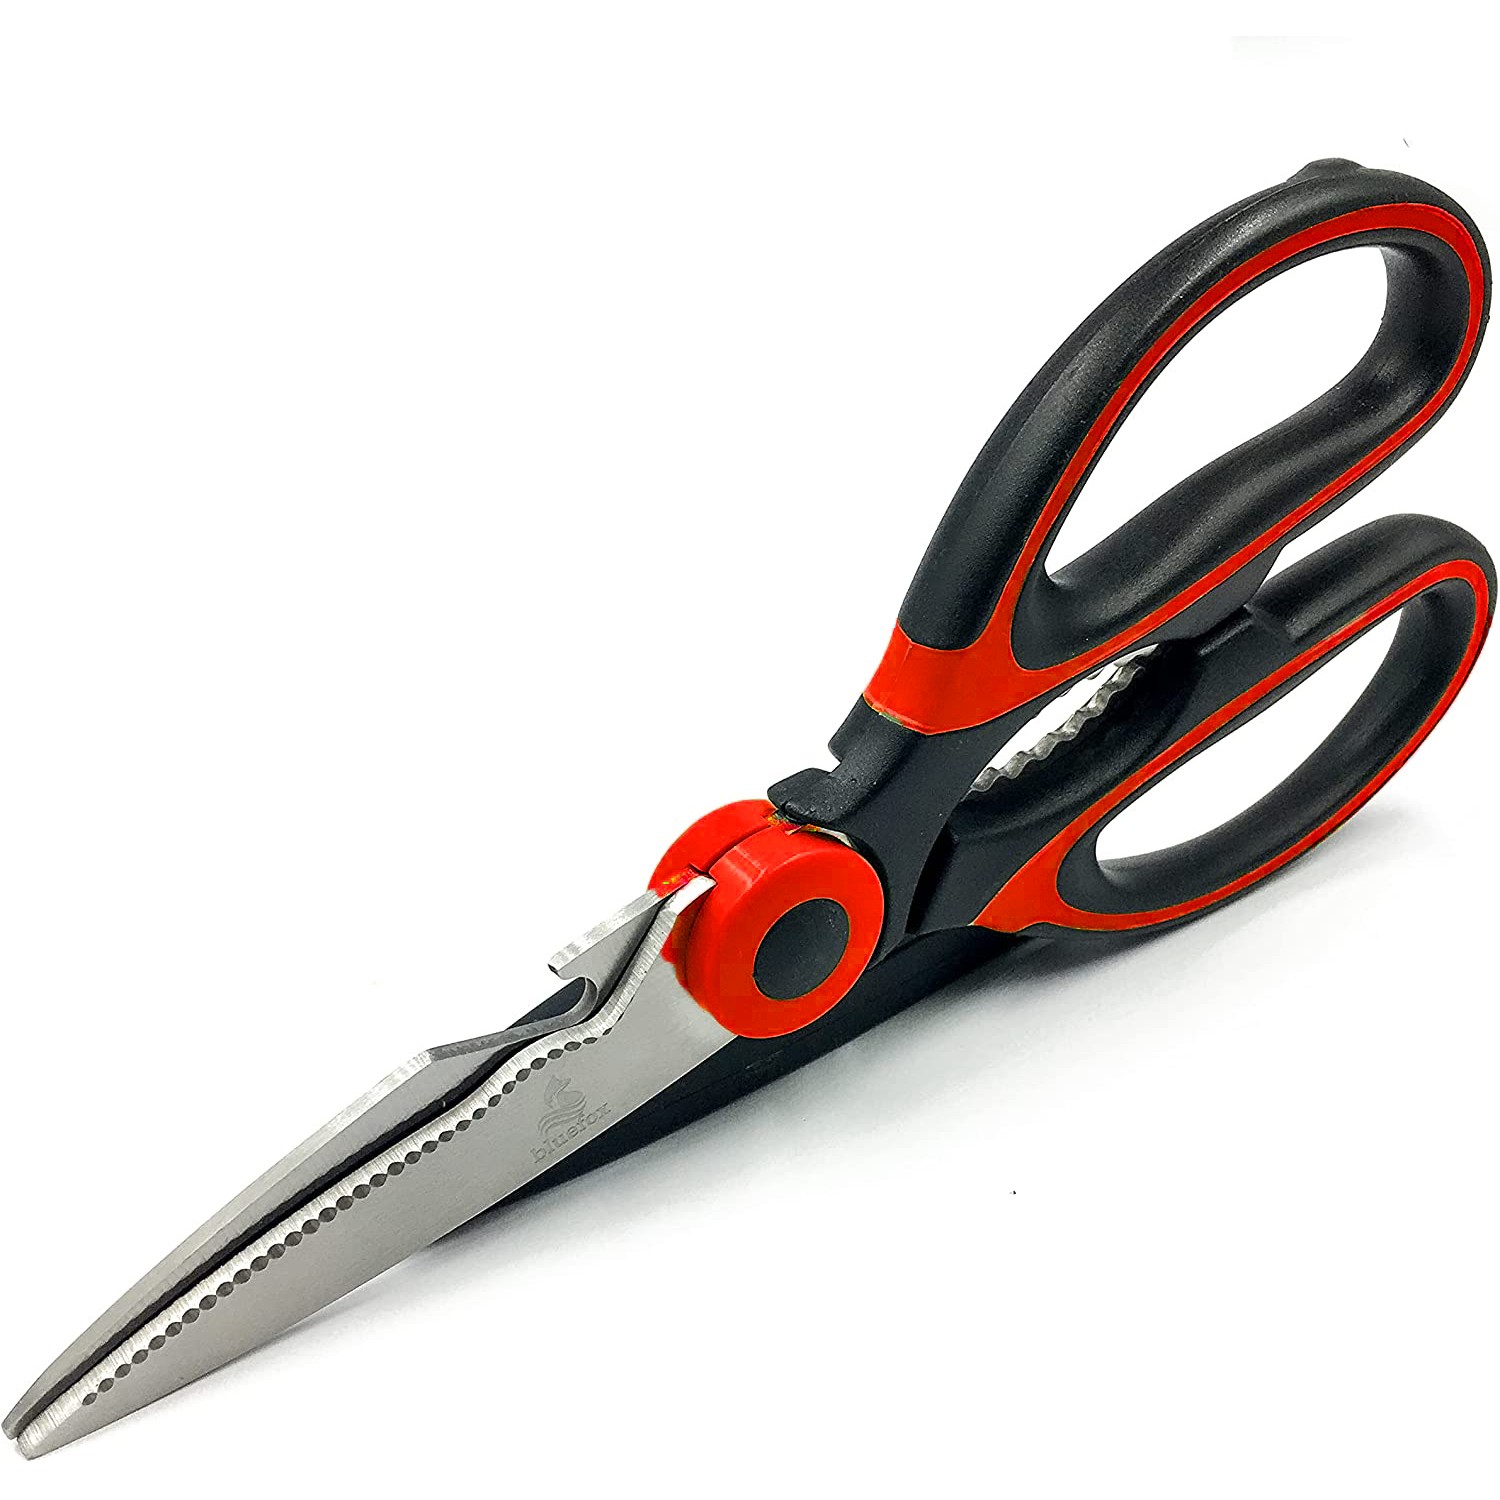 Buy TICARE Kitchen Shears Multifunctional Heavy Duty Scissors